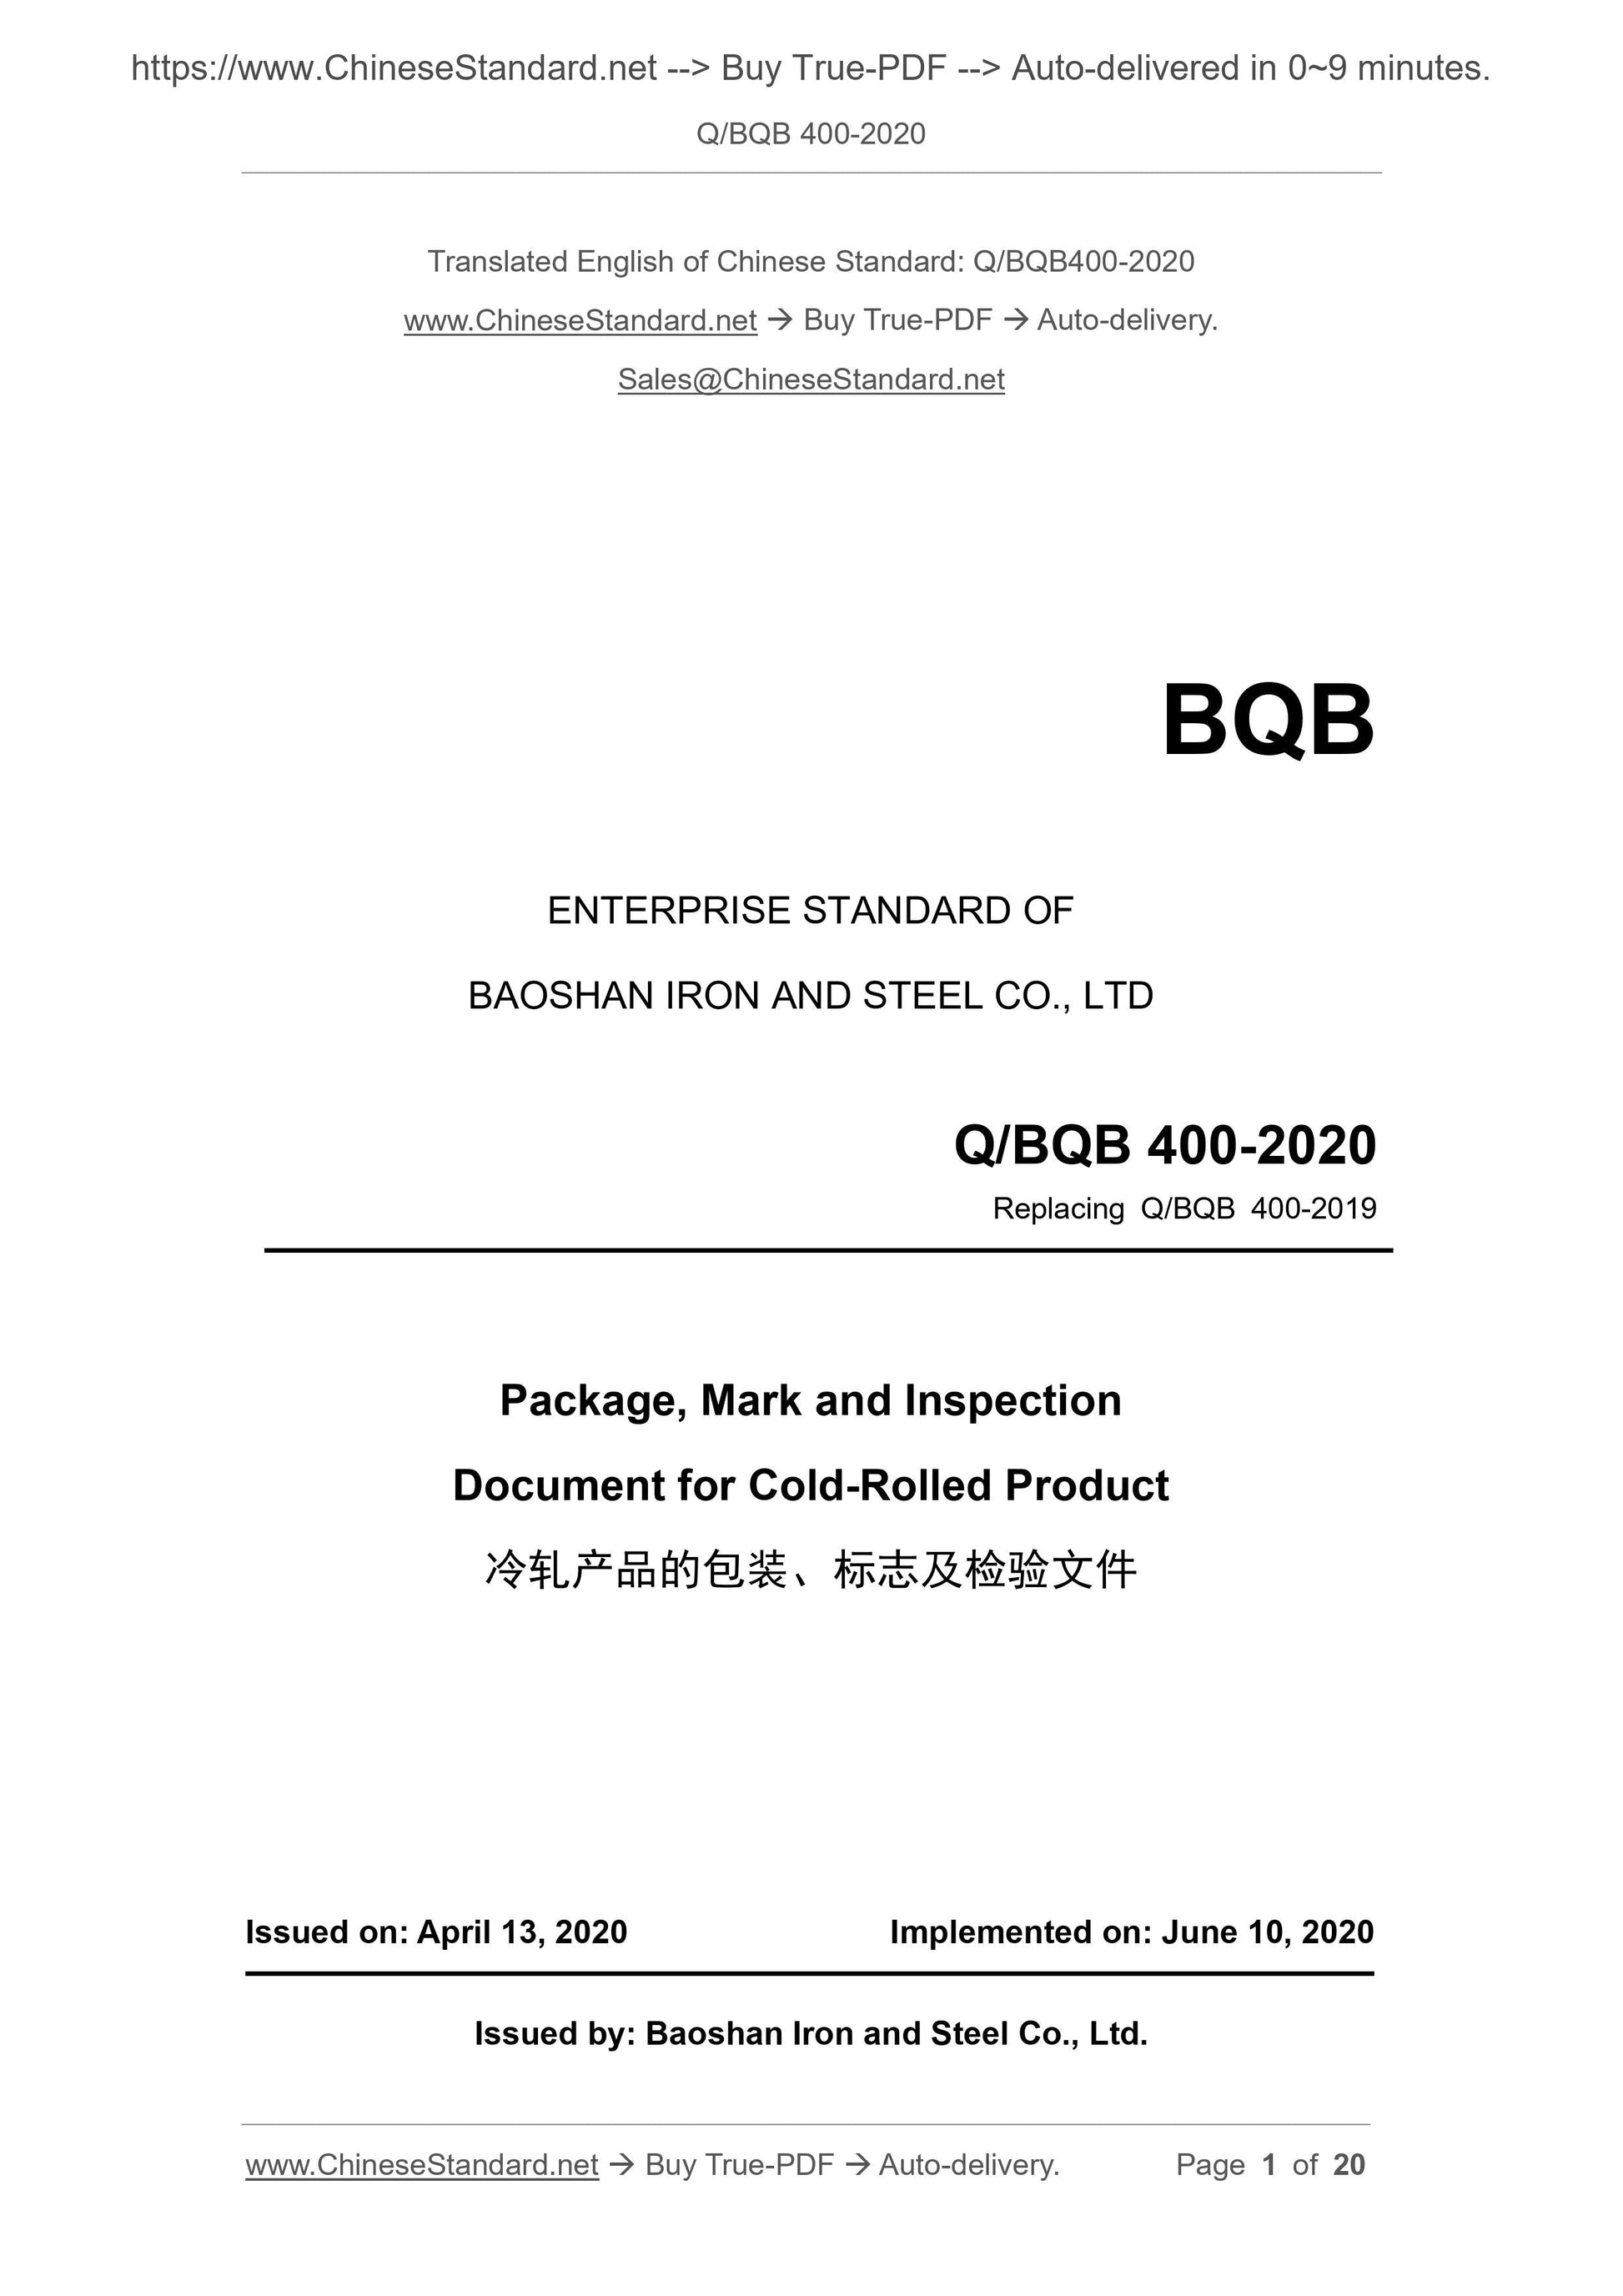 Q/BQB 400-2020 Page 1